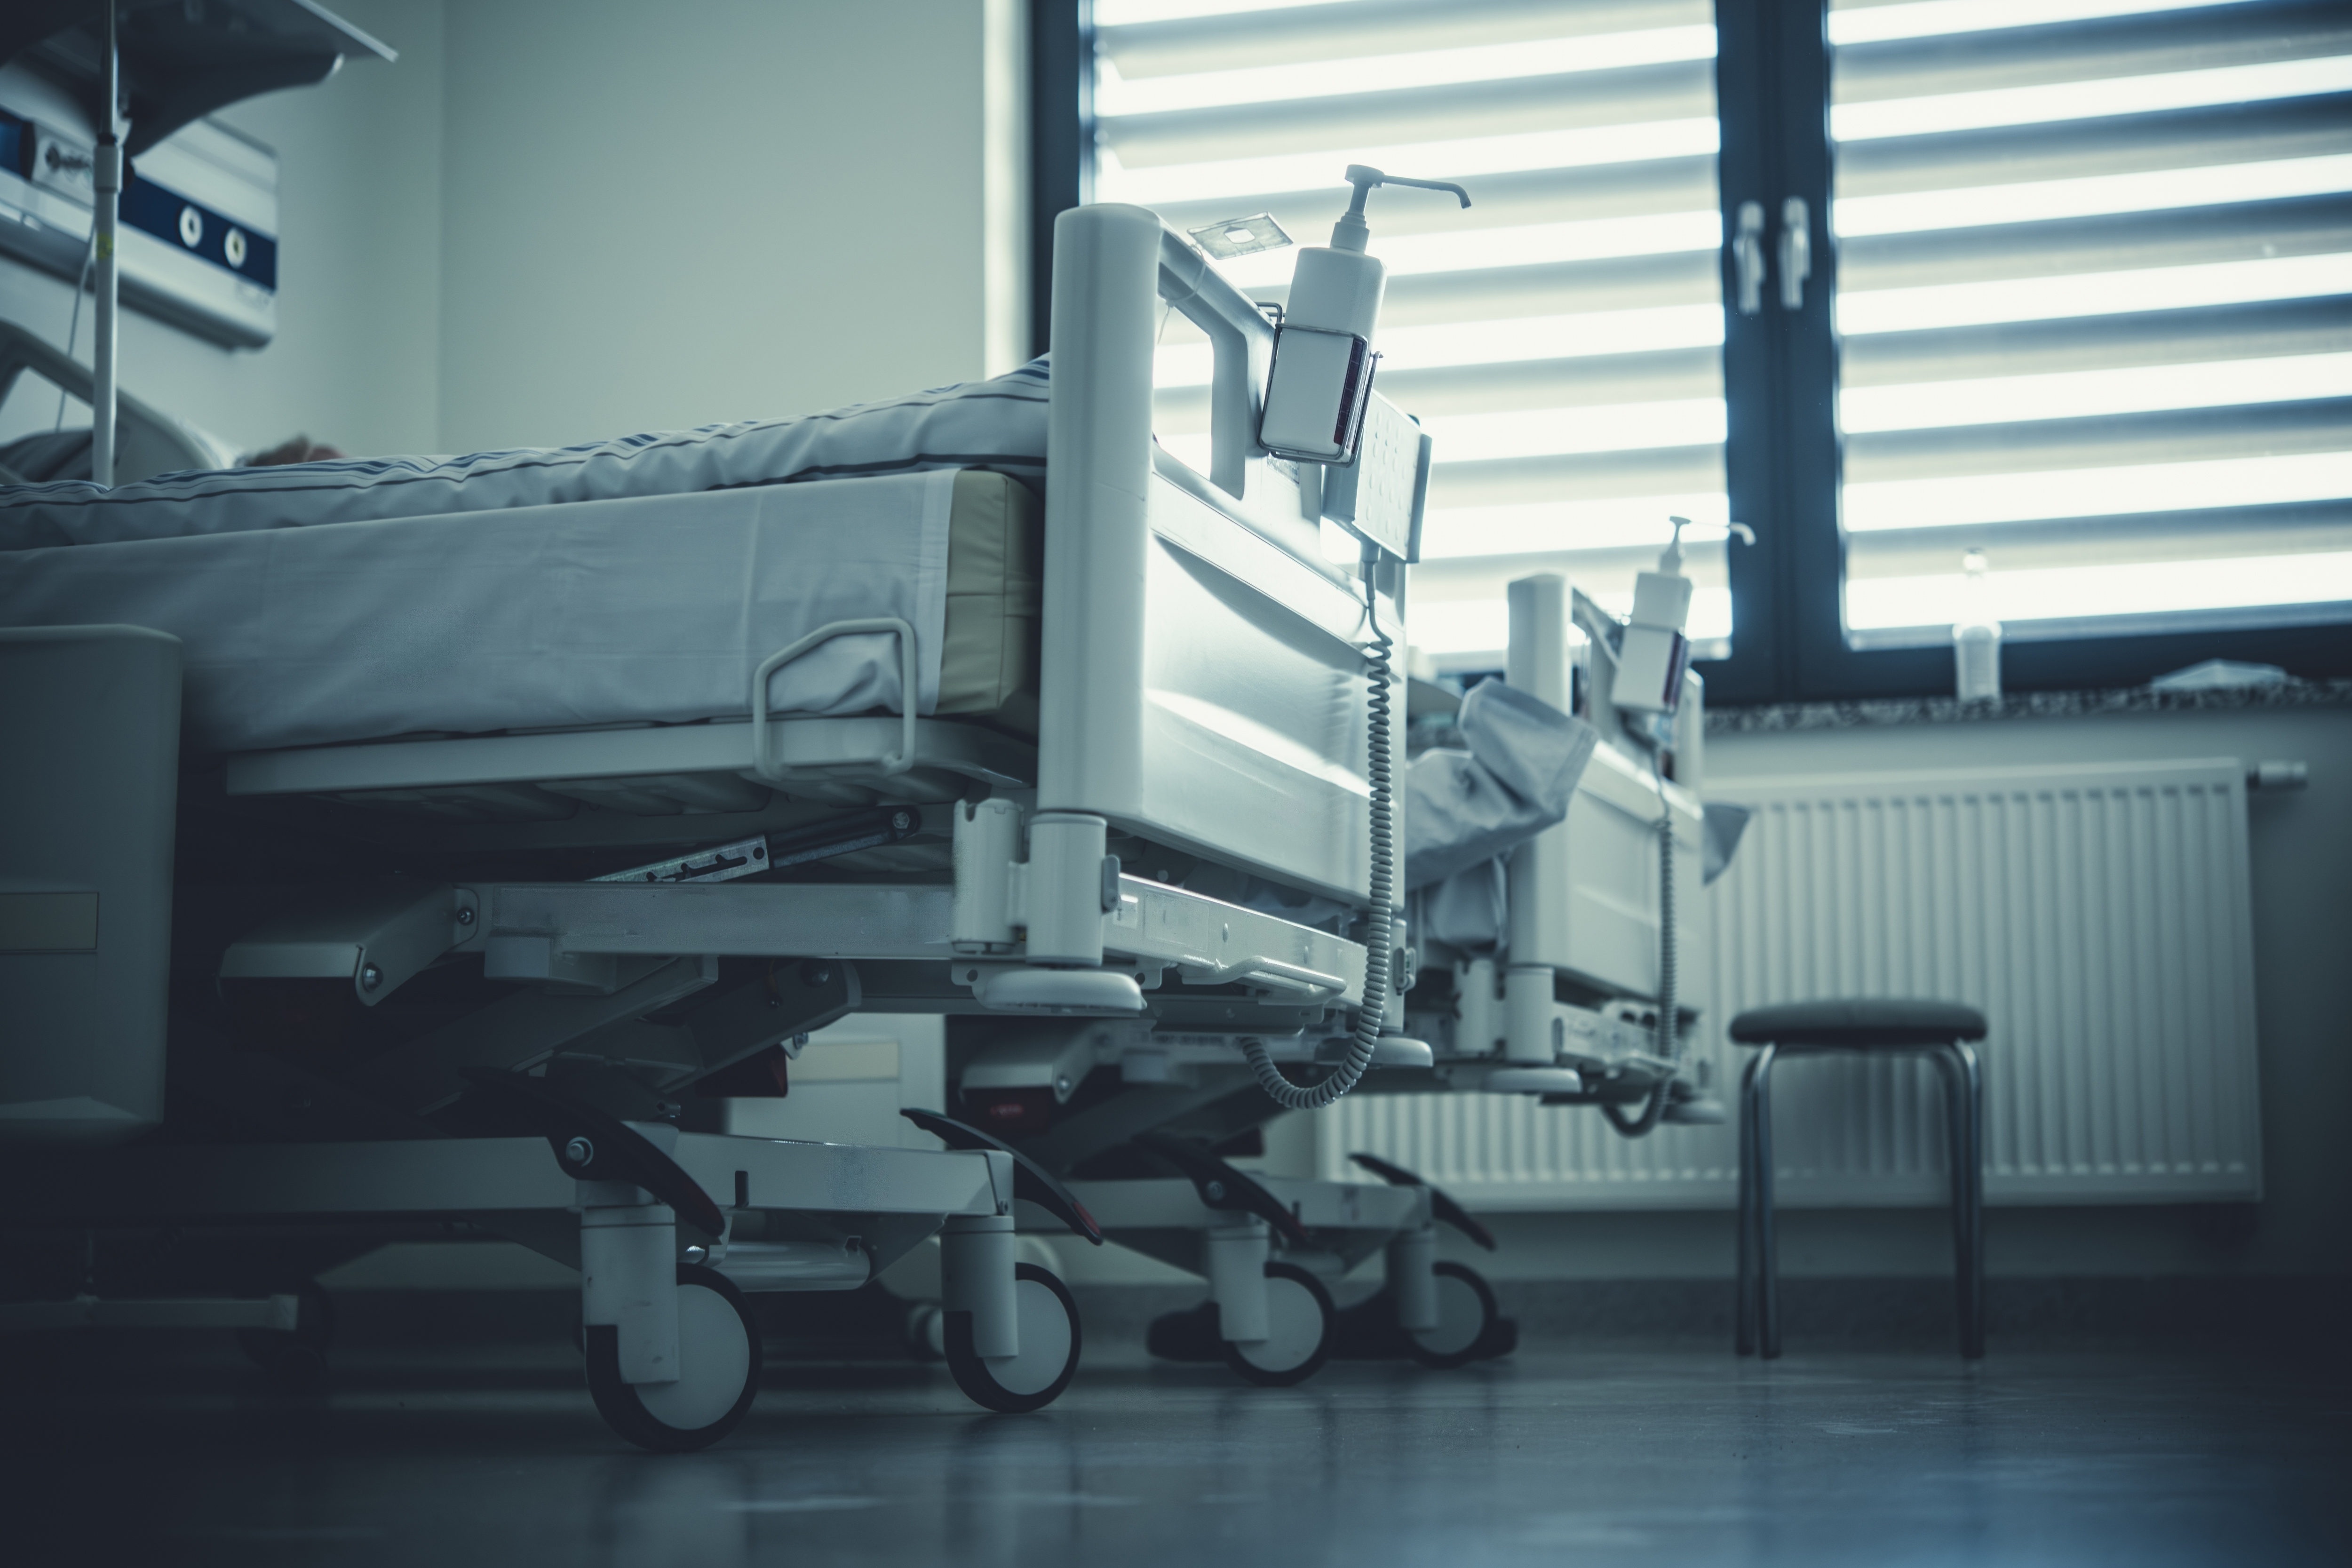 Betten in einem Krankenhauszimmer. | Quelle: Shutterstock